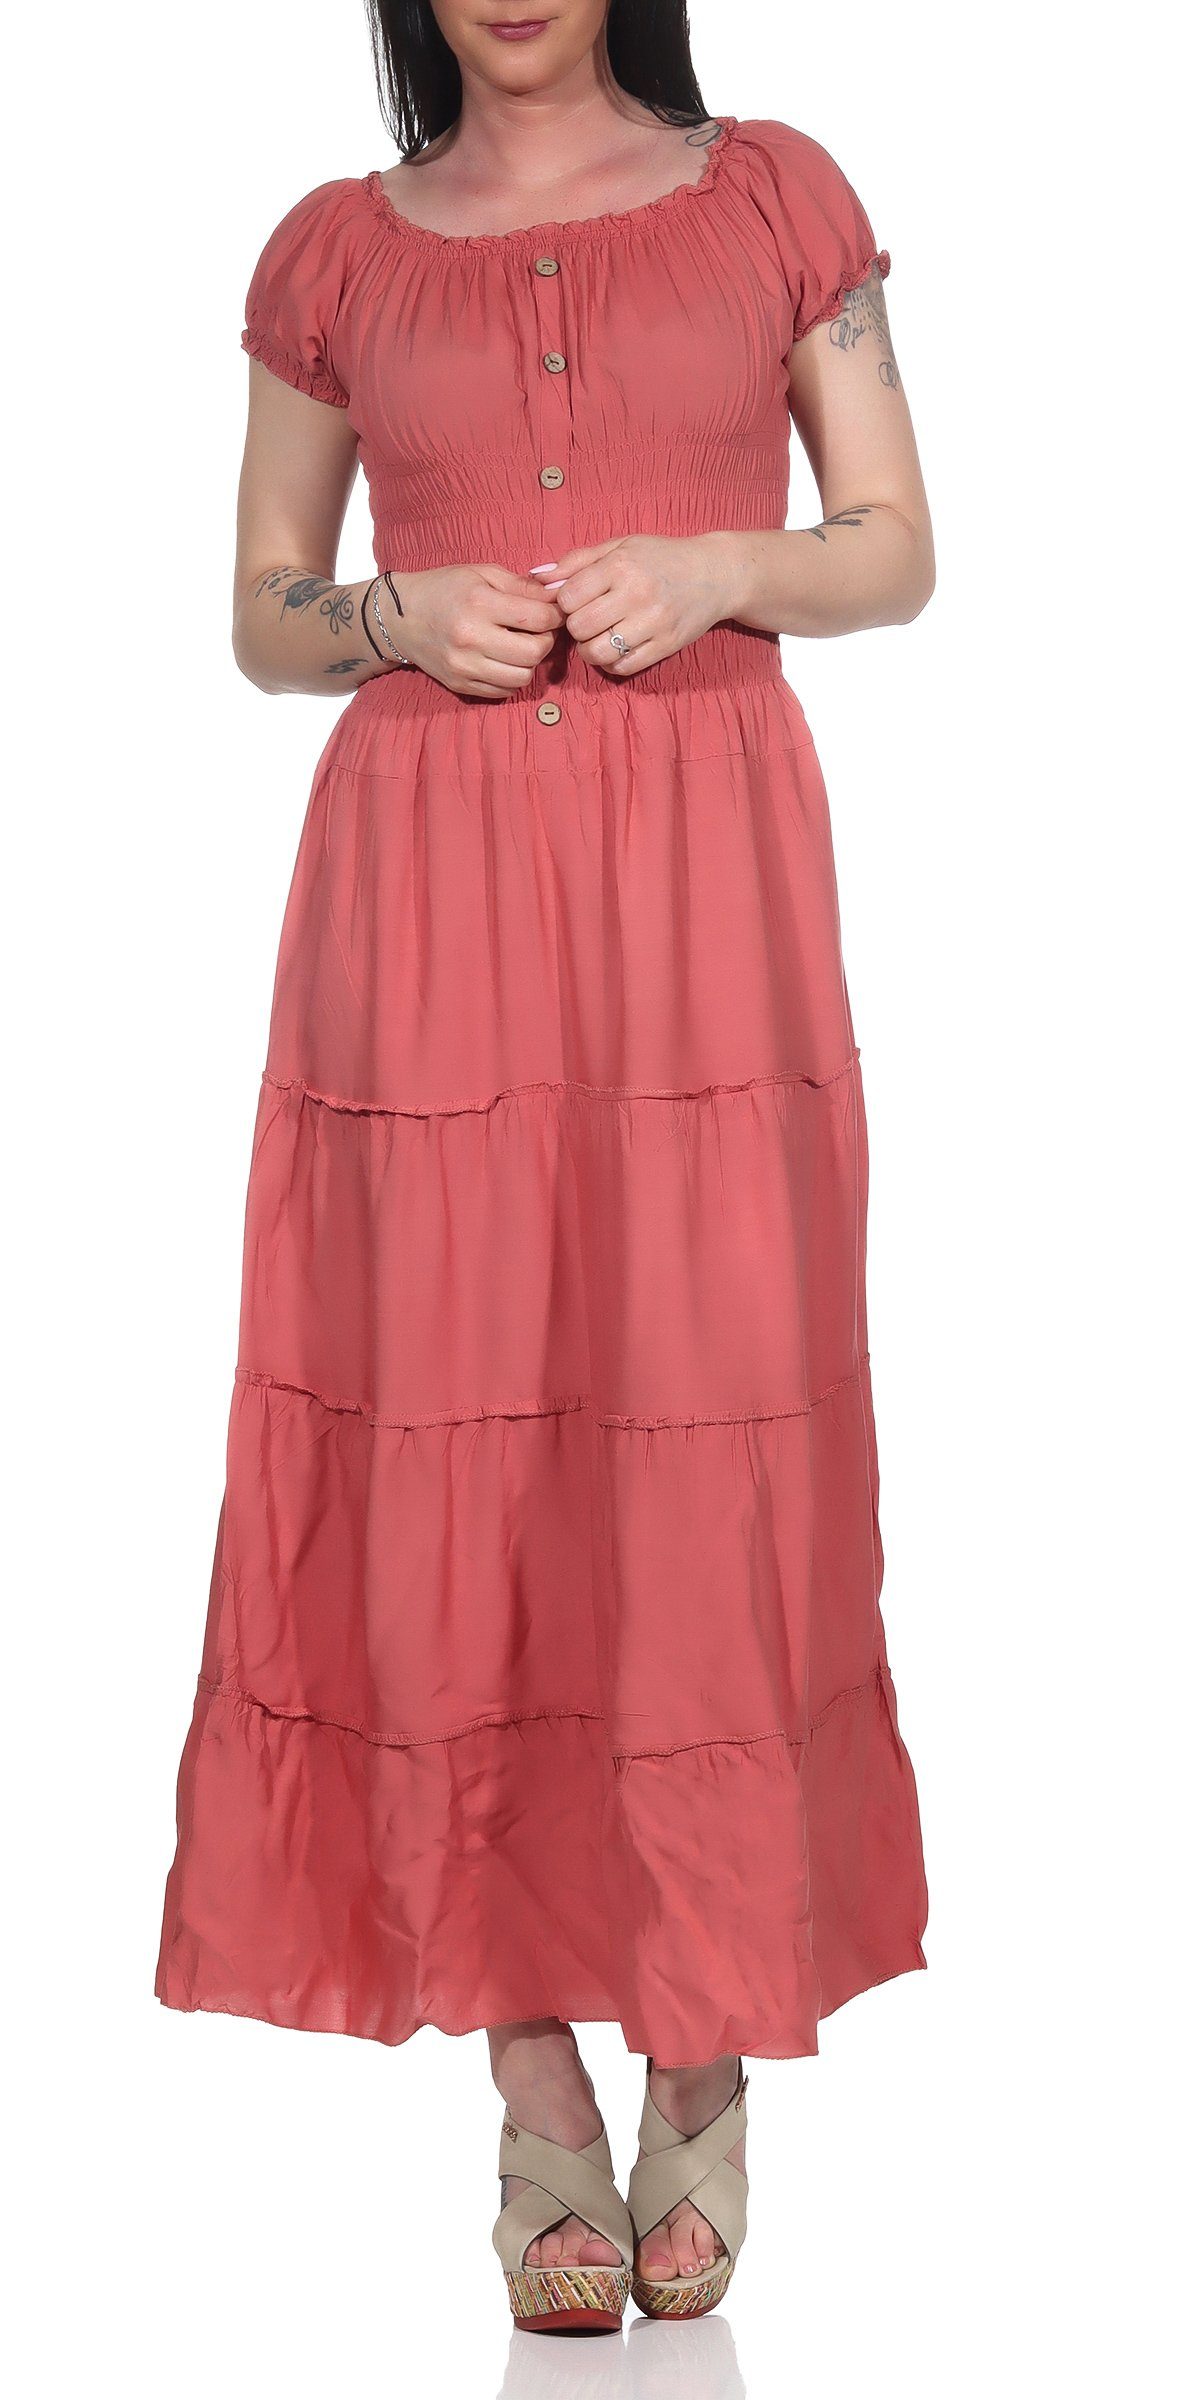 Aurela Damenmode Strandkleid »Kleider Damen elegant Sommer Kleider lang  einfarbig« Gesamtlänge: 132 - 135cm, Carmen- oder Rundhals Ausschnitt  möglich online kaufen | OTTO